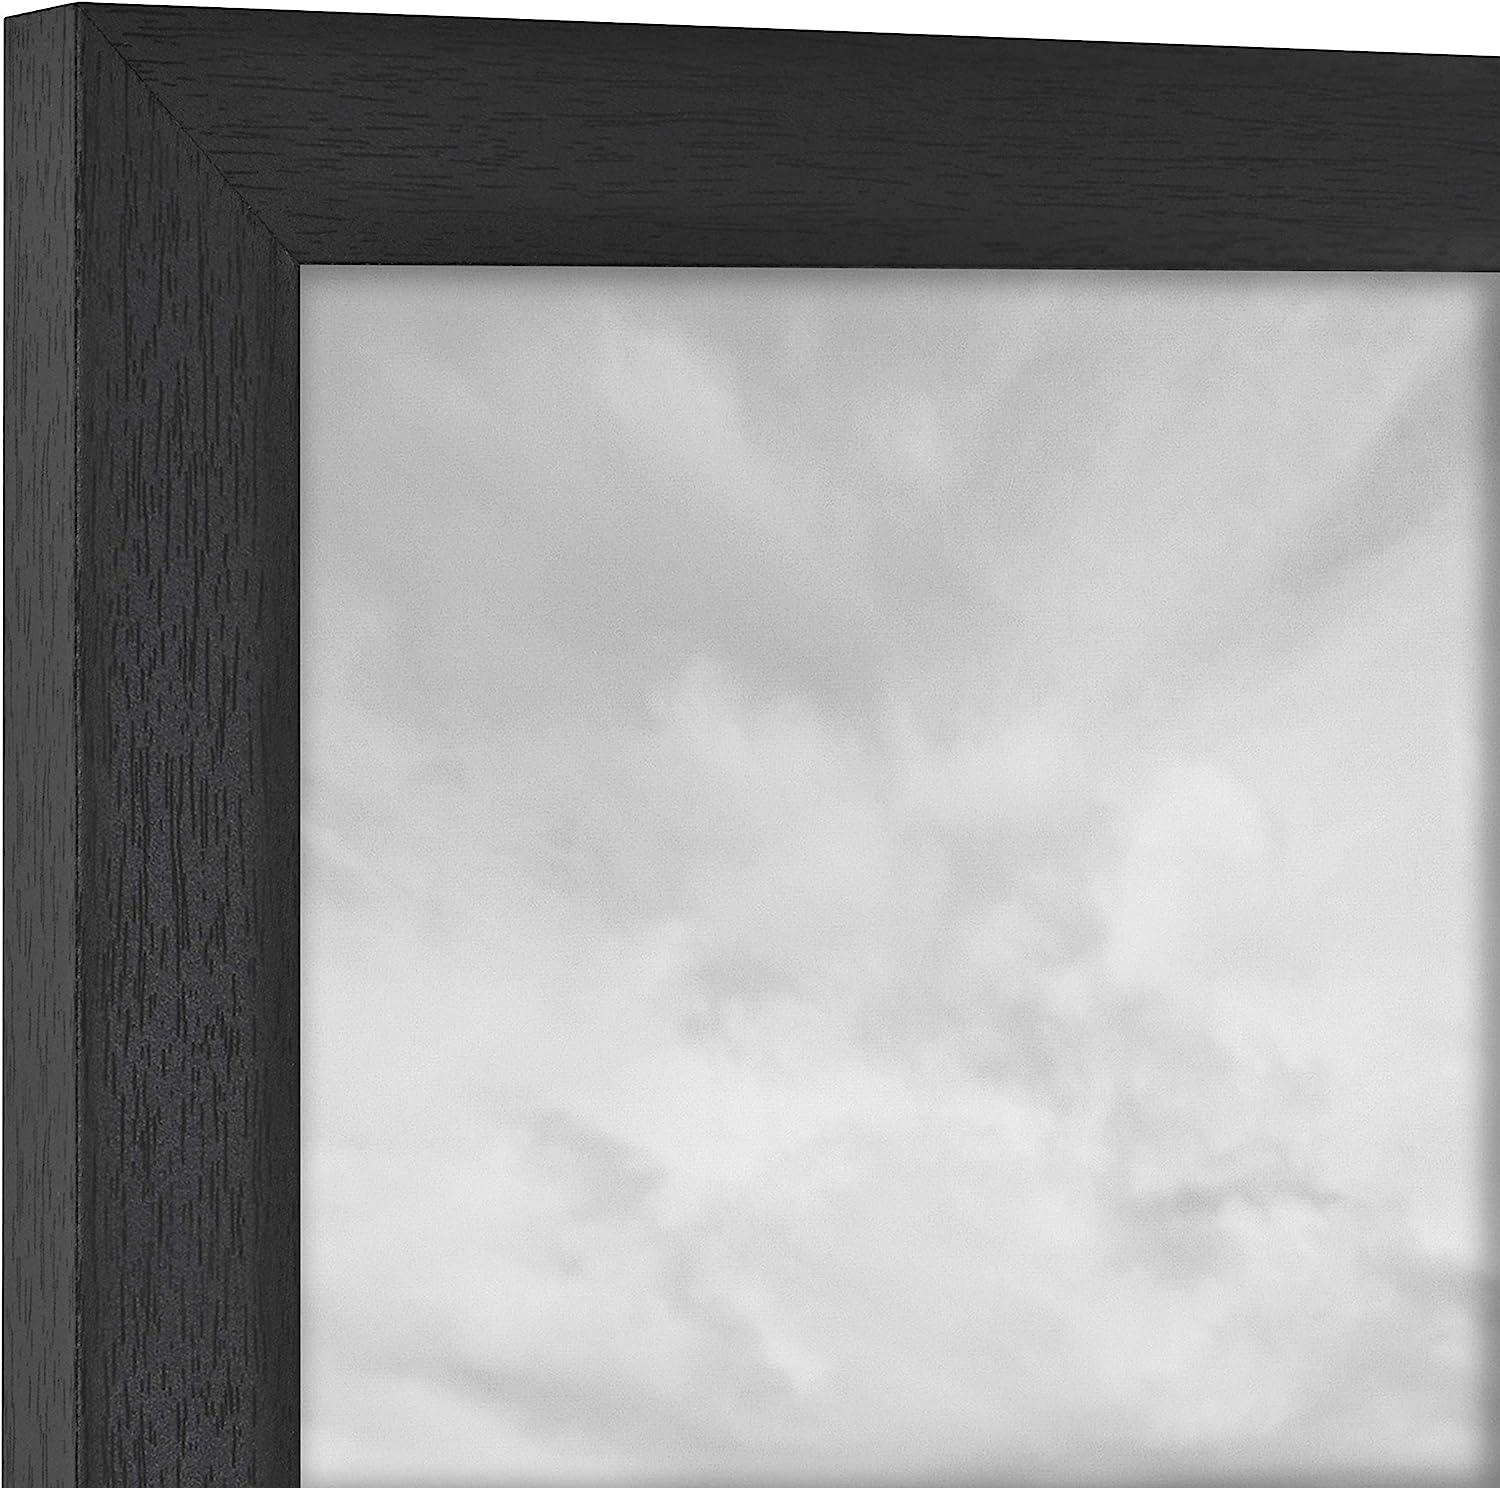 Studio Gallery Marcos con textura de madera color negro 16 x 24 pulgadas 4064 x - VIRTUAL MUEBLES